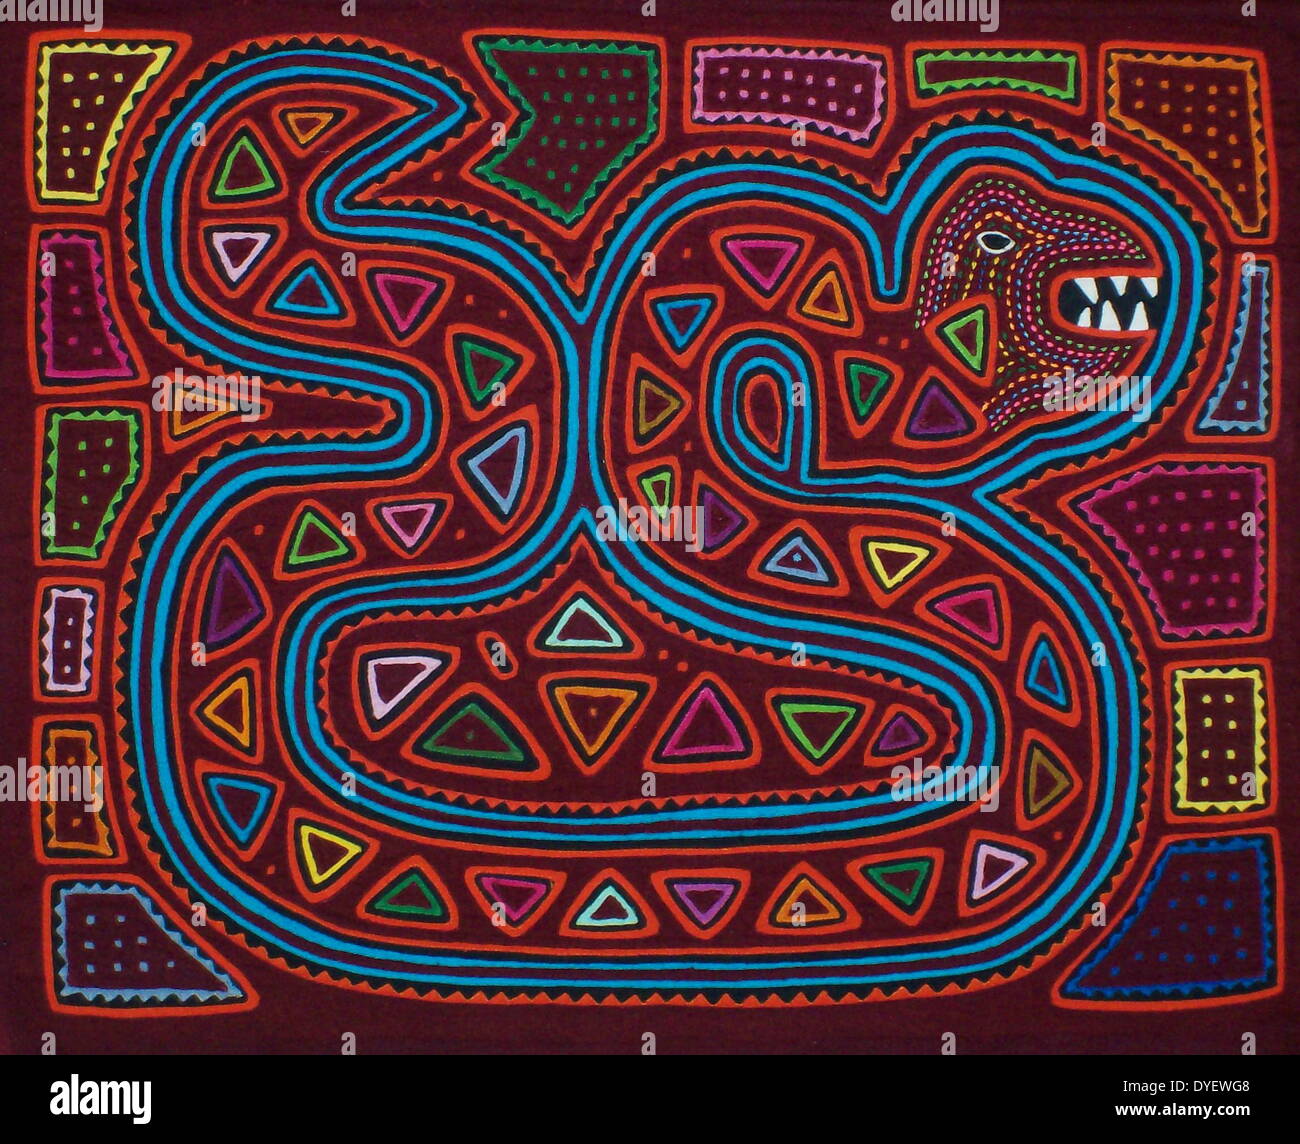 Mola da tessili Kuna artista indiano, raffigurante un serpente. Dal San Blas arcipelago, Panama. Reverse applique design indossato sulla camicia femminile. Foto Stock